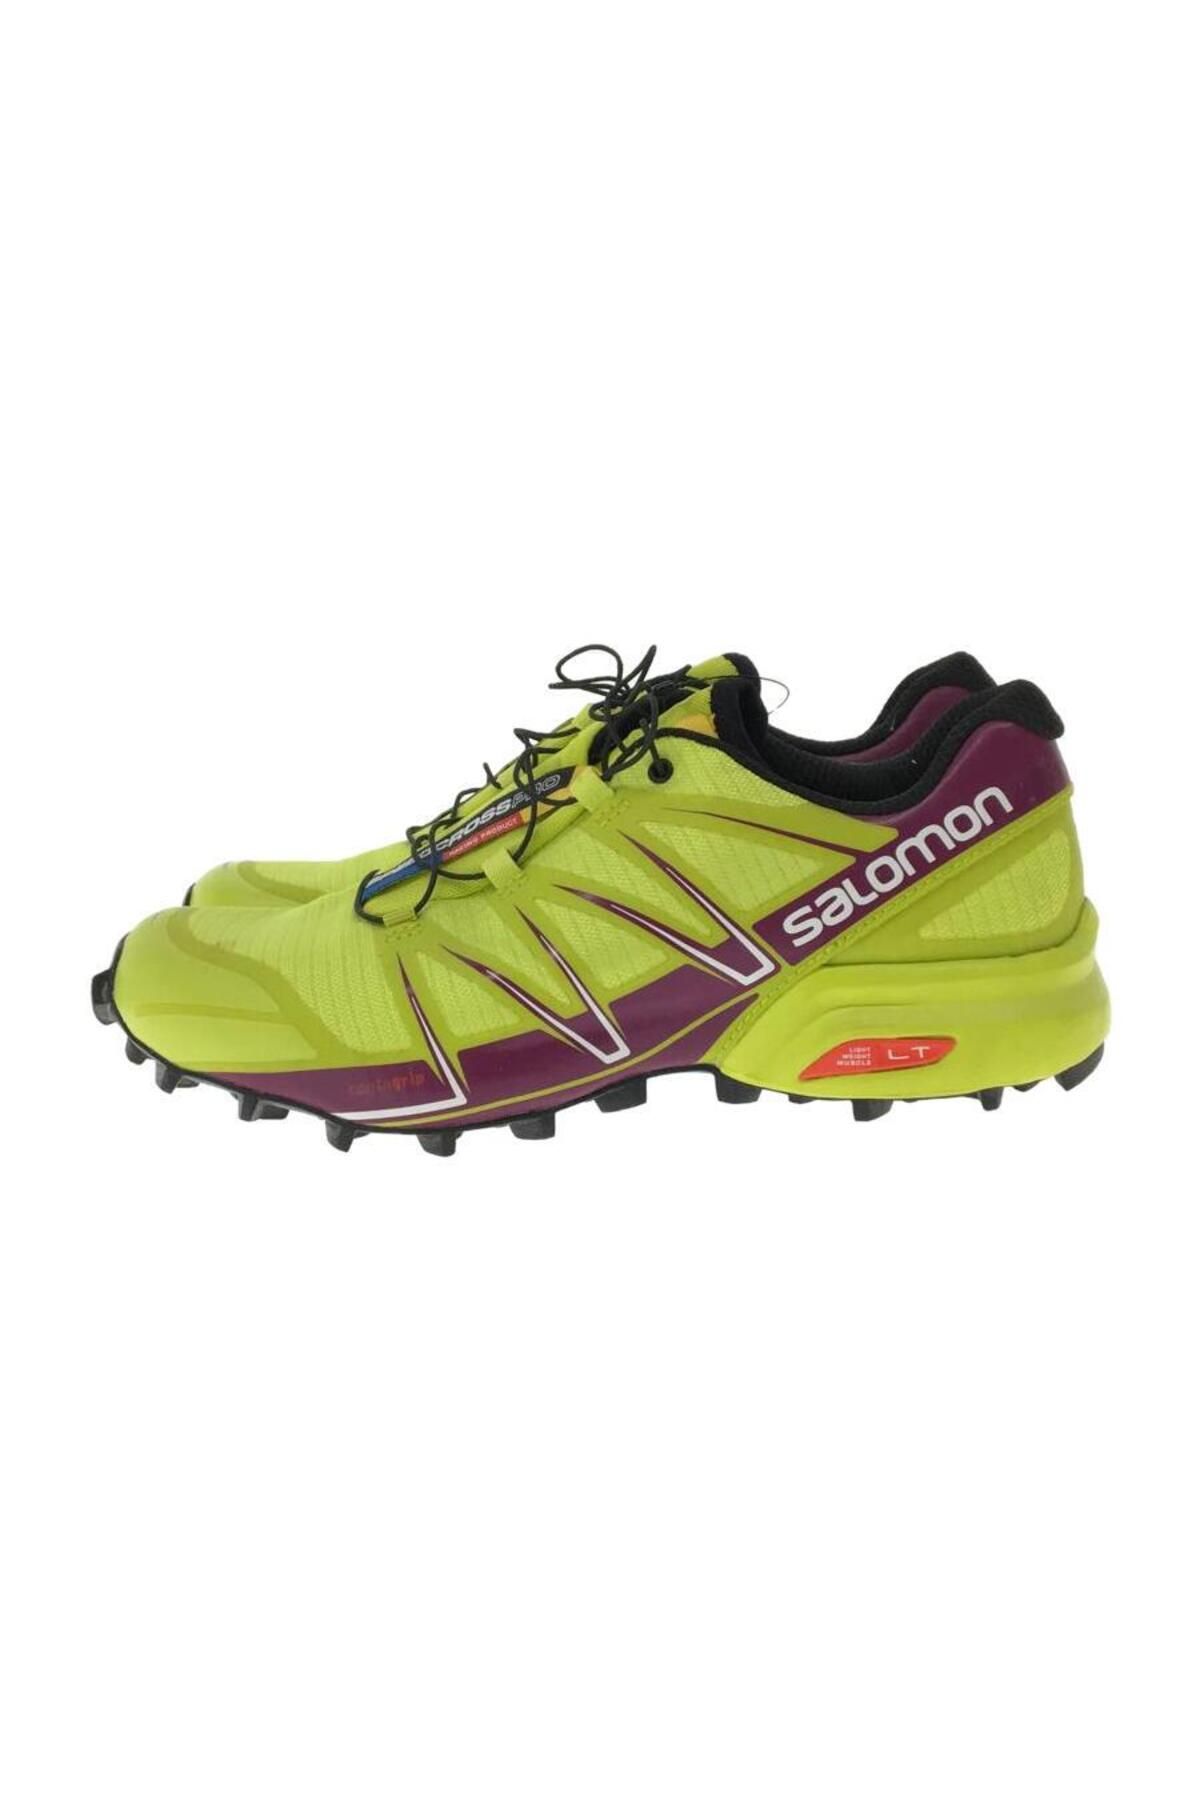 Salomon Speedcross Pro Kadın Ayakkabı 379154